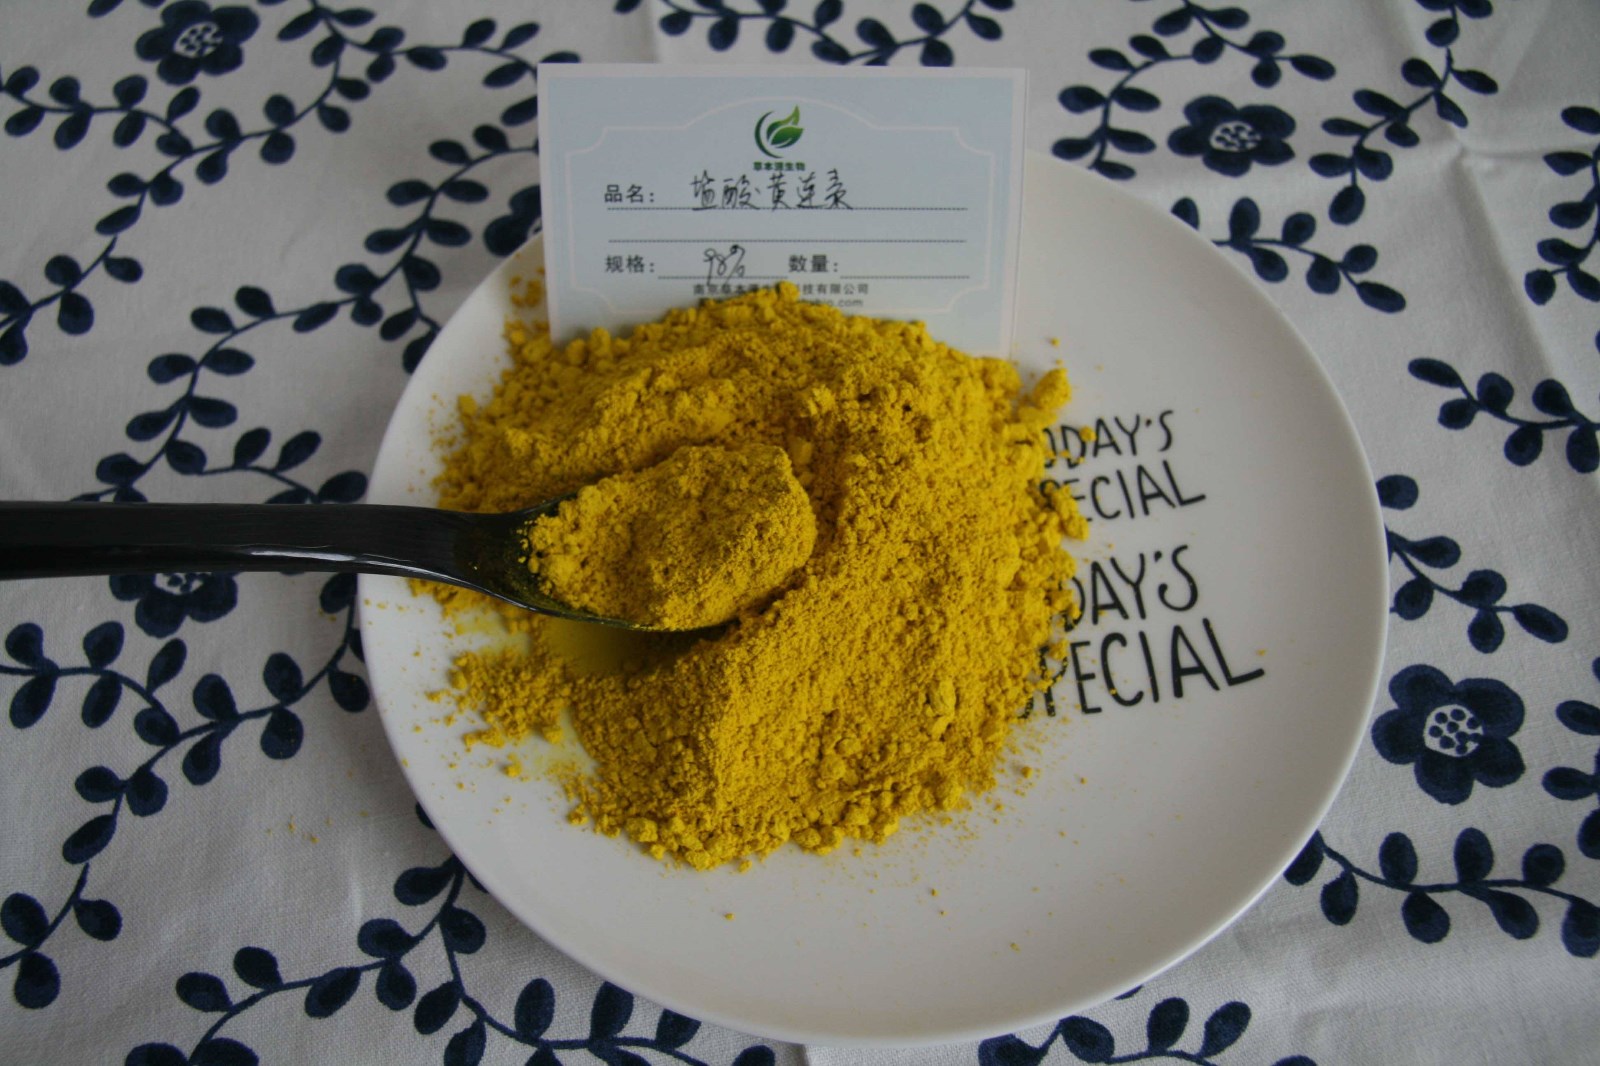 盐酸小檗碱片是指黄连素吗？有什么区别吗